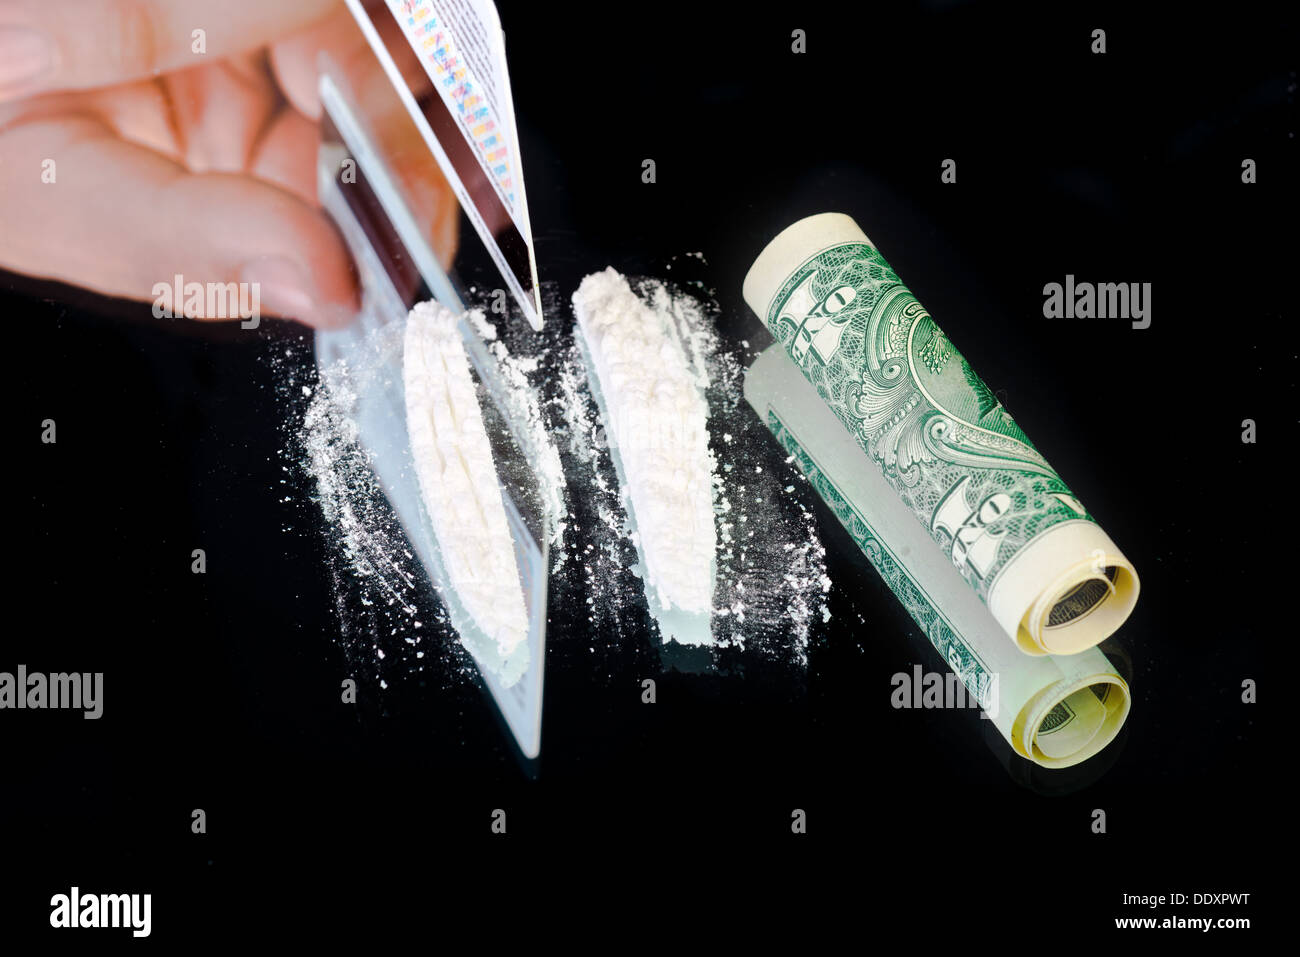 La cocaïne et l'argent sur fond miroir noir Banque D'Images